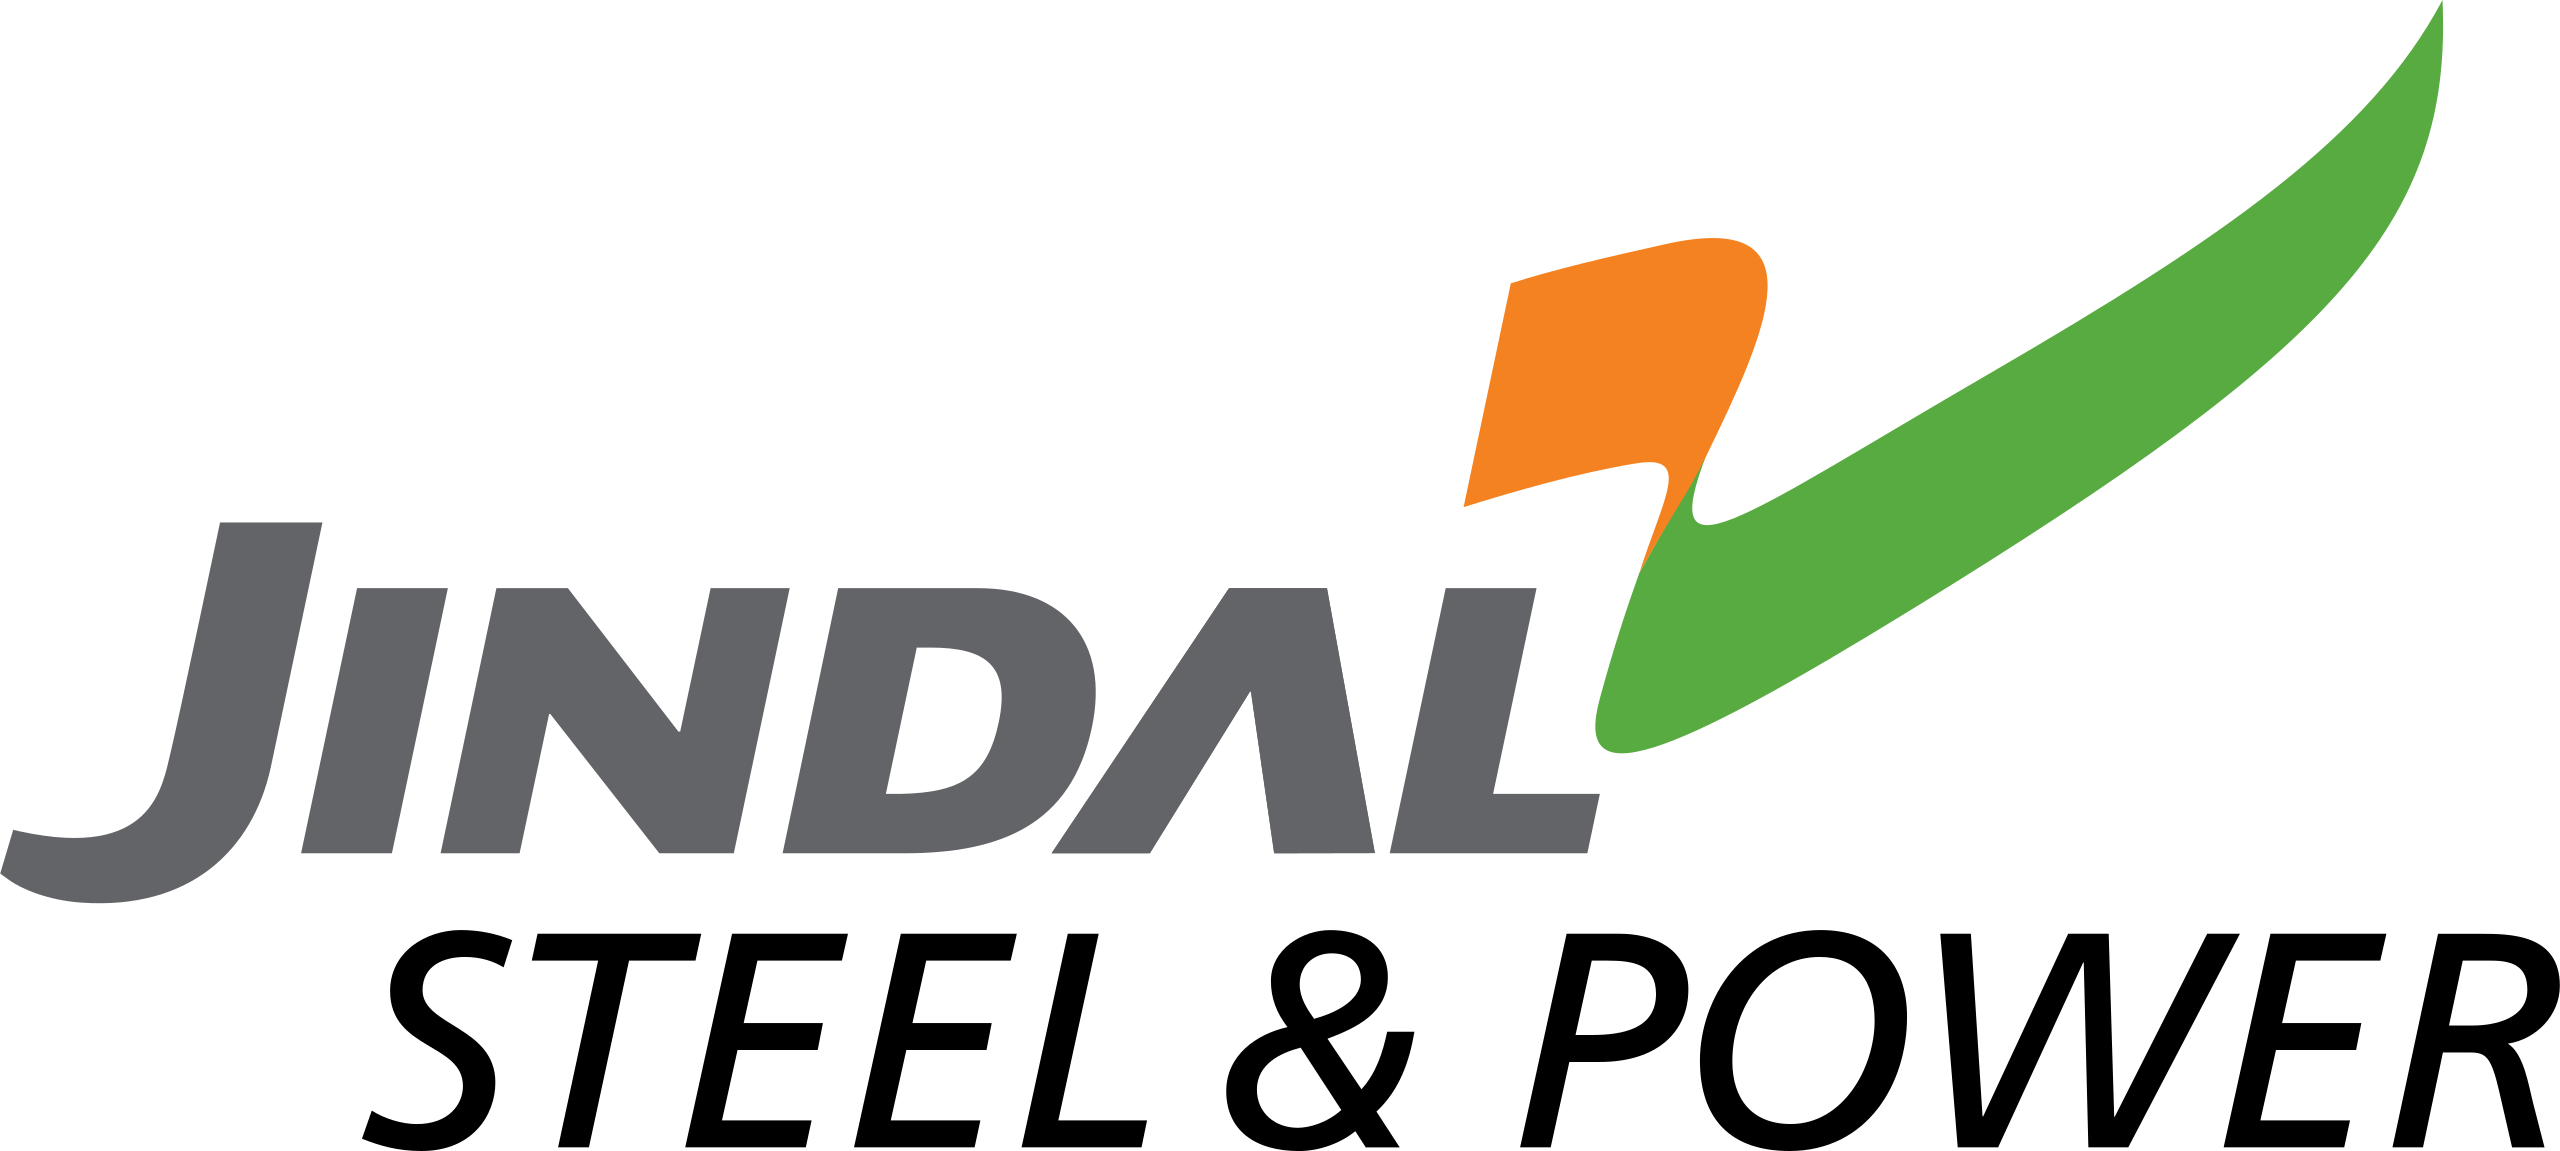 Jindal_logo_Revised.svg